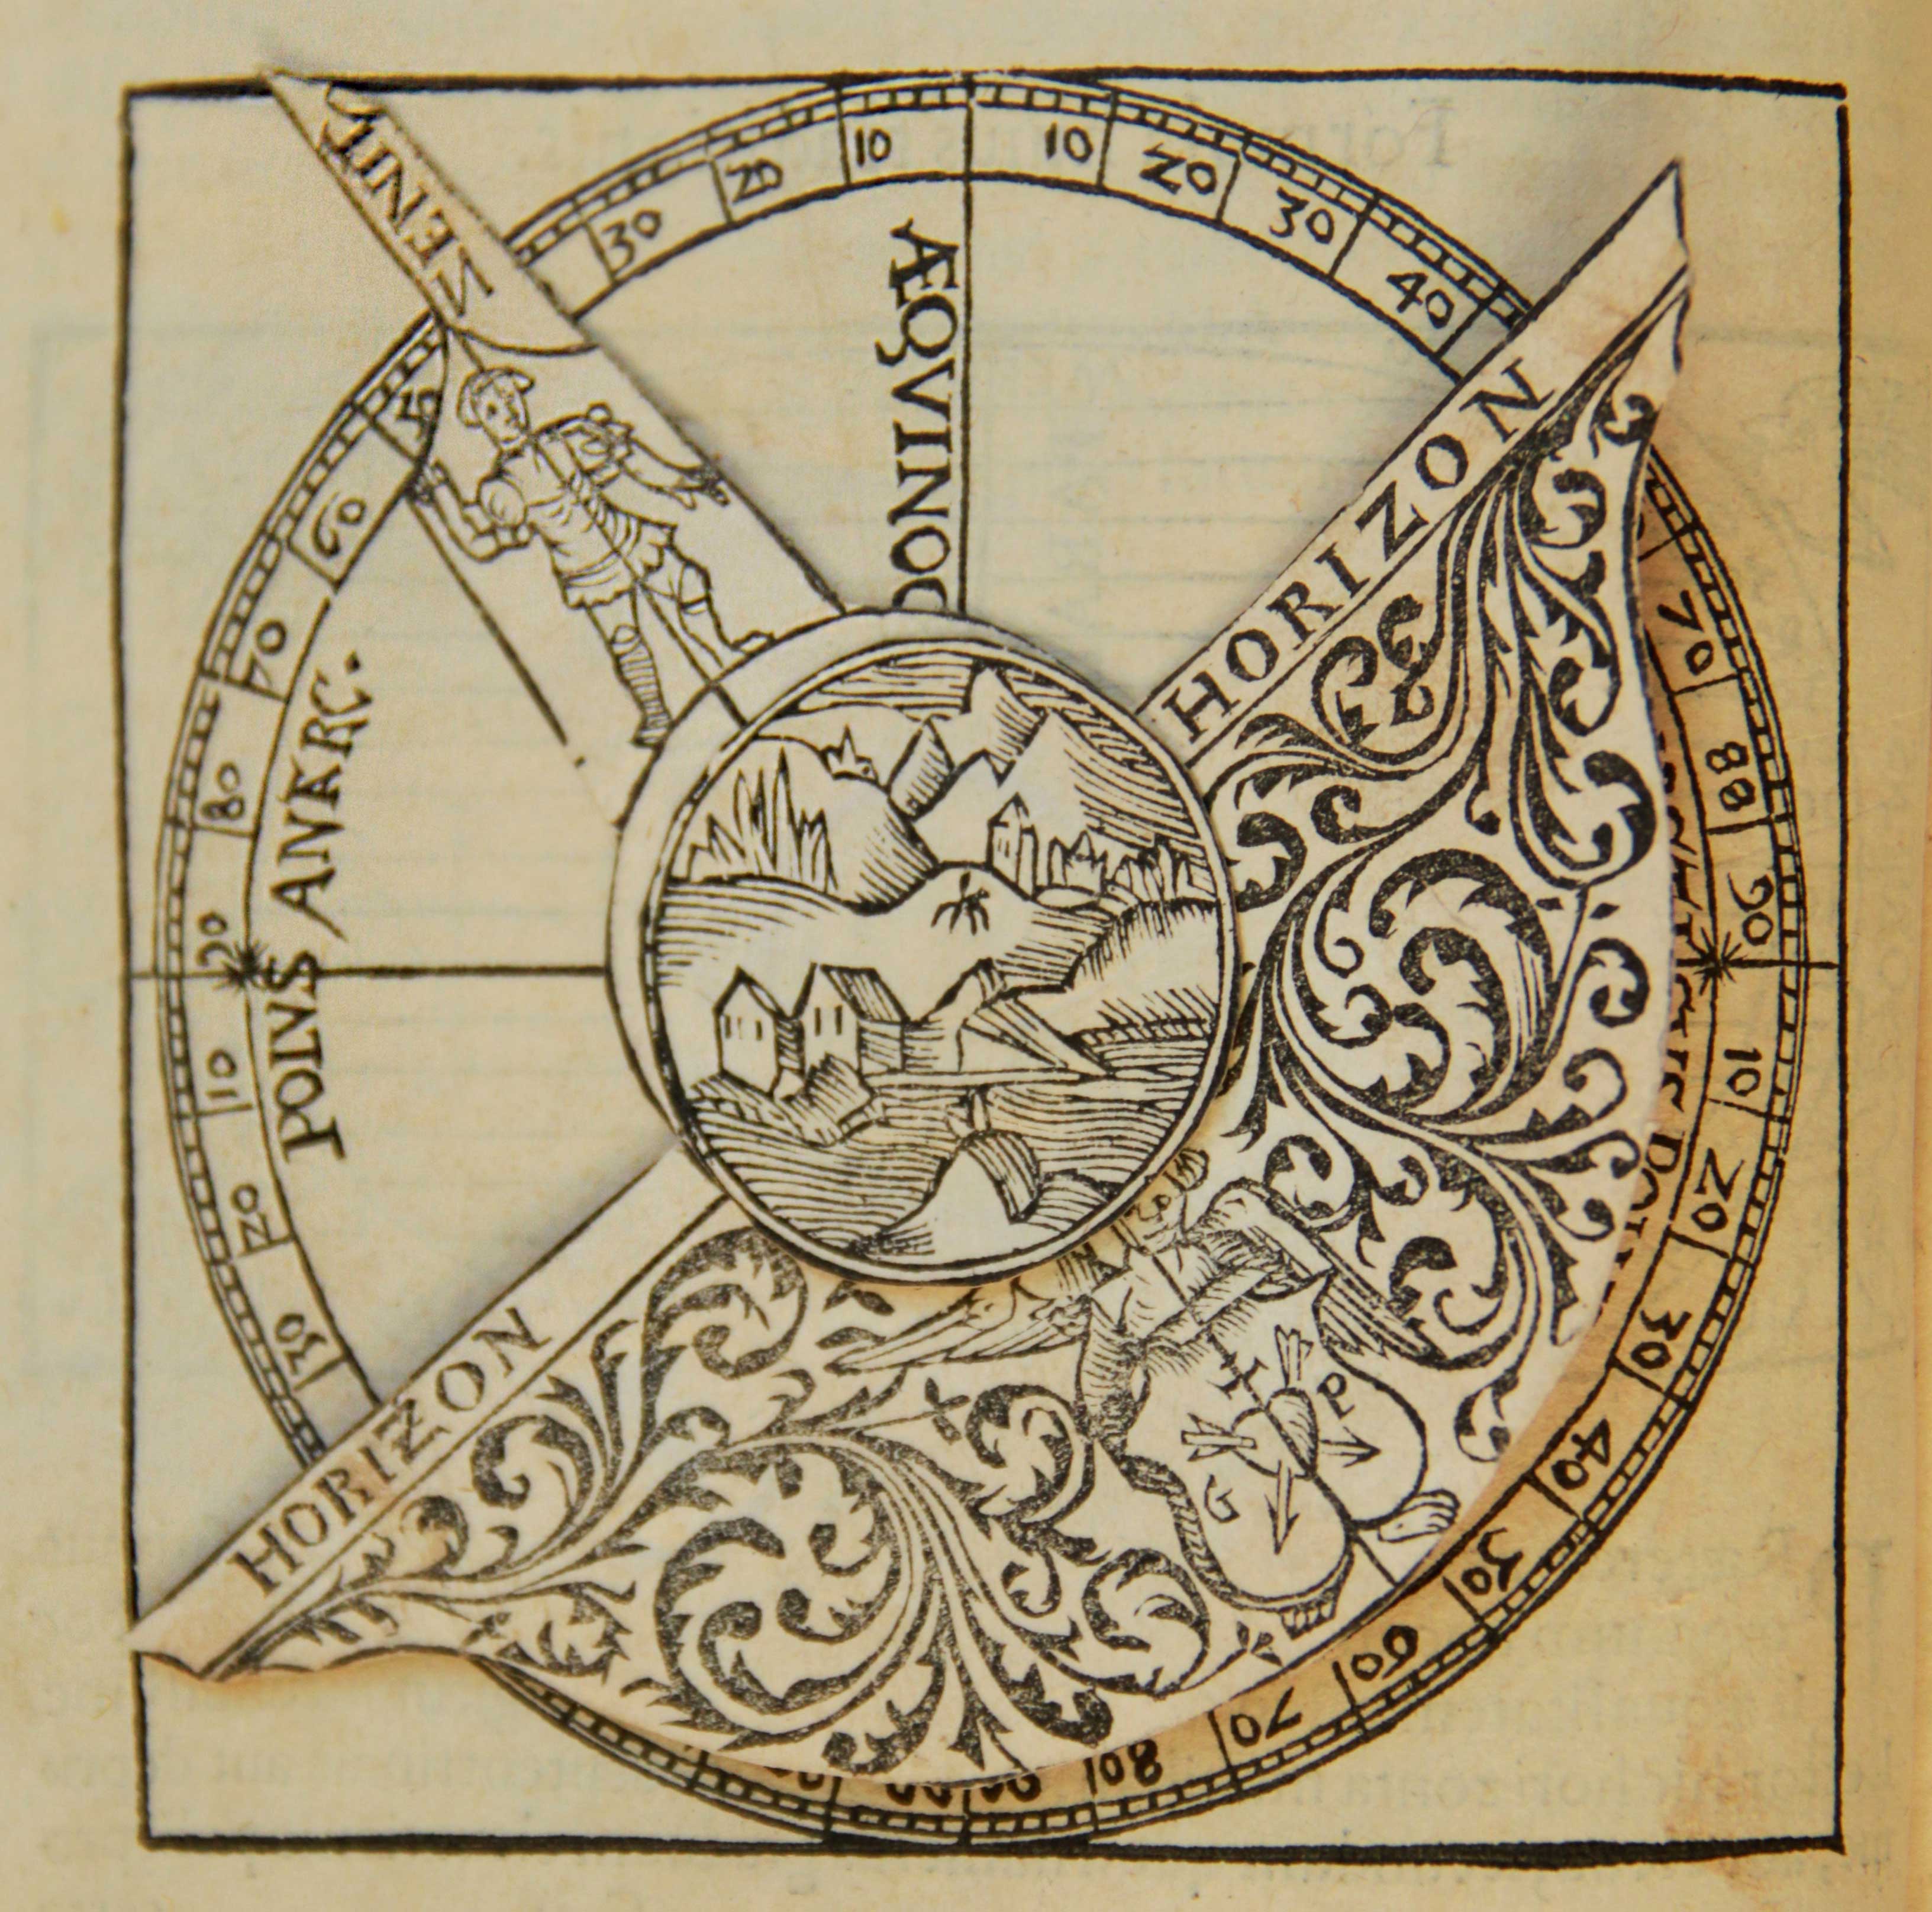 Apian-Cosmographia-1540-FD-I-6444,2-Blatt-10v-Ausschnitt